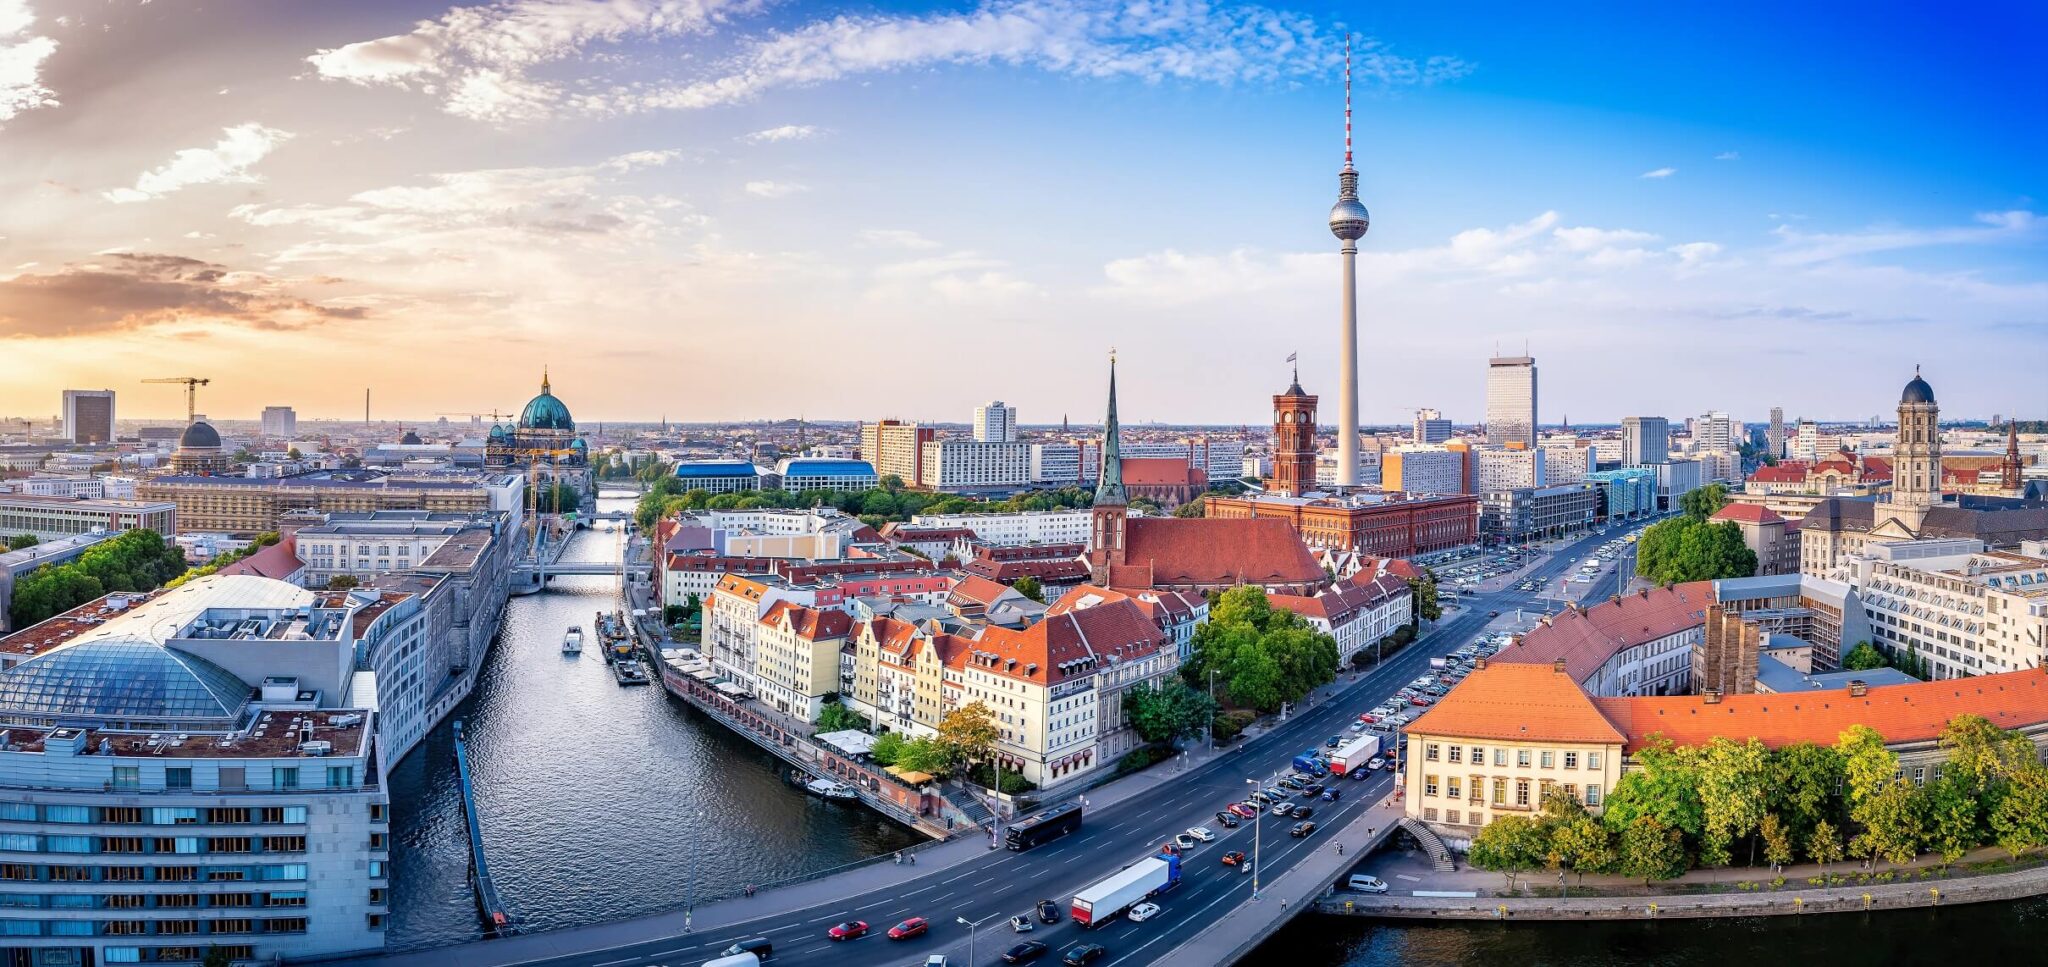 8 Reasons to Visit Berlin